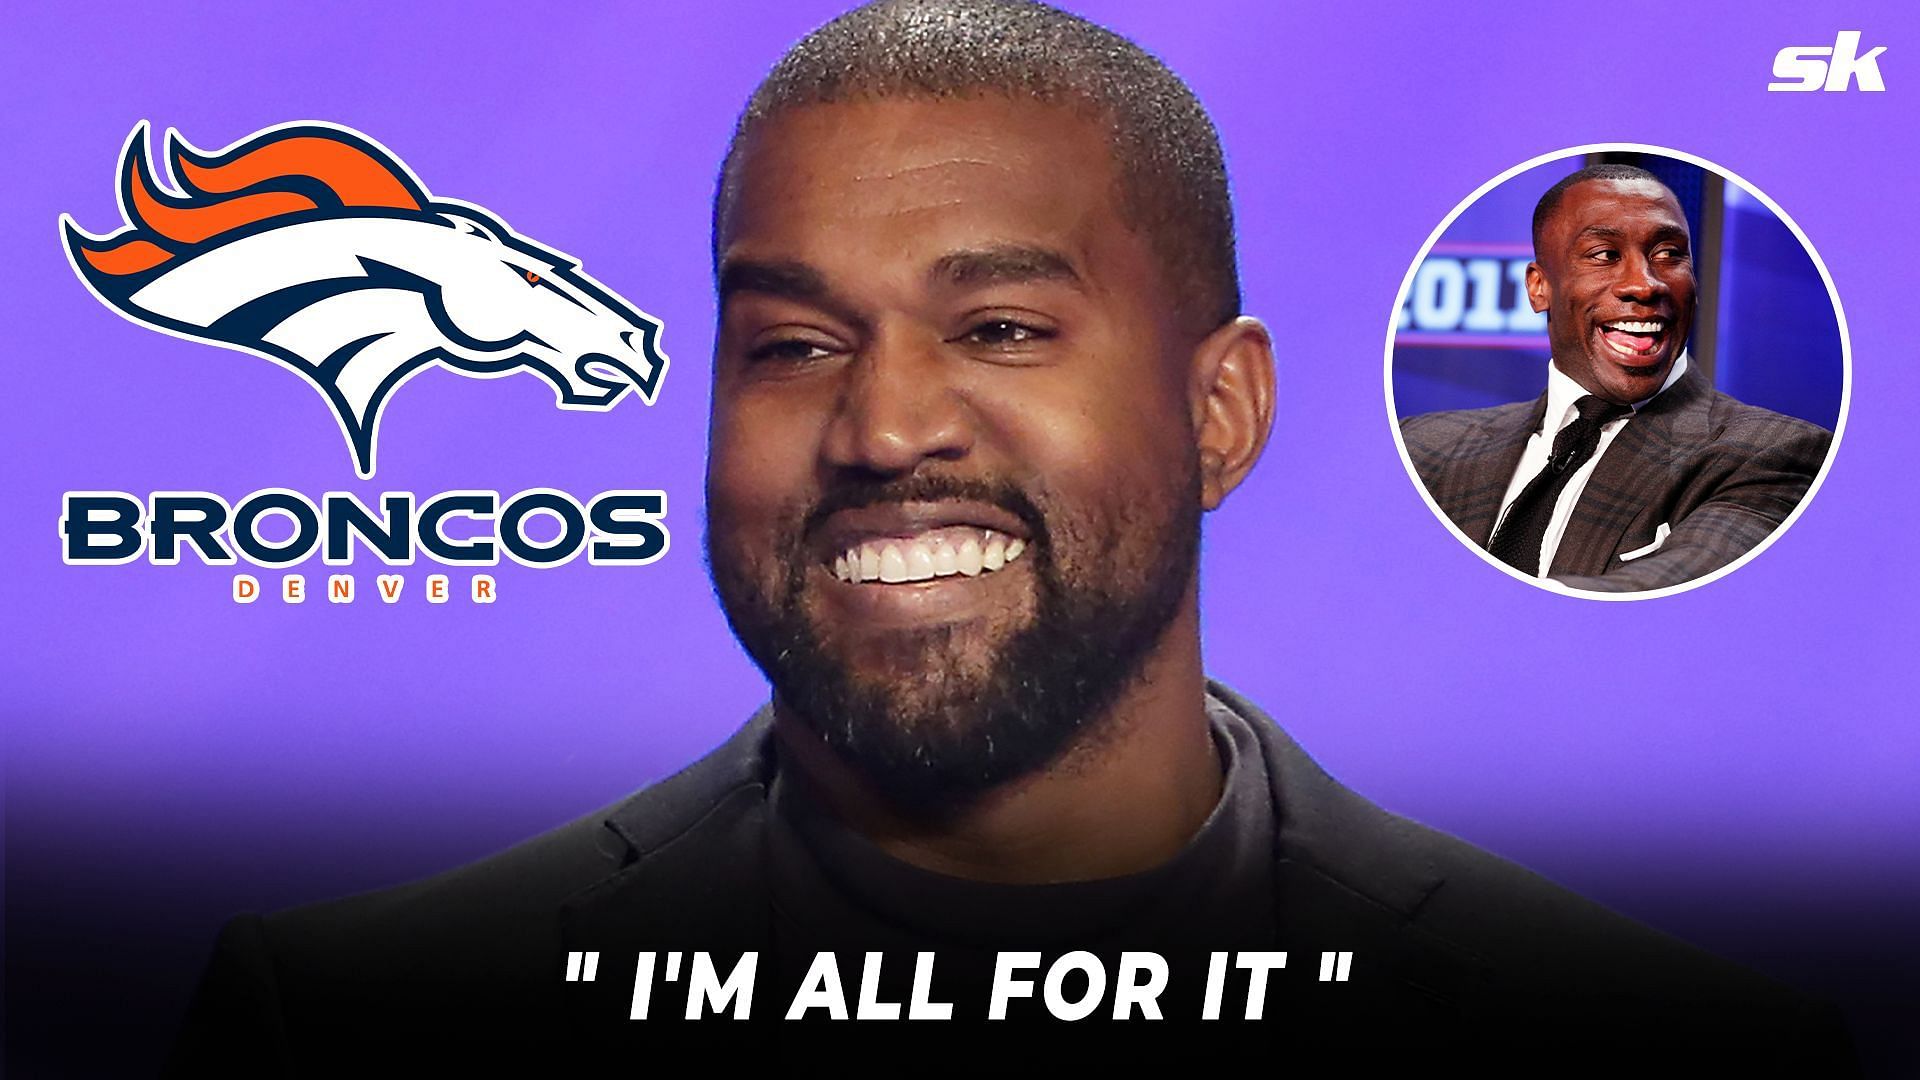 Shannon Sharpe backs proposed Kanye West takeover of Broncos 